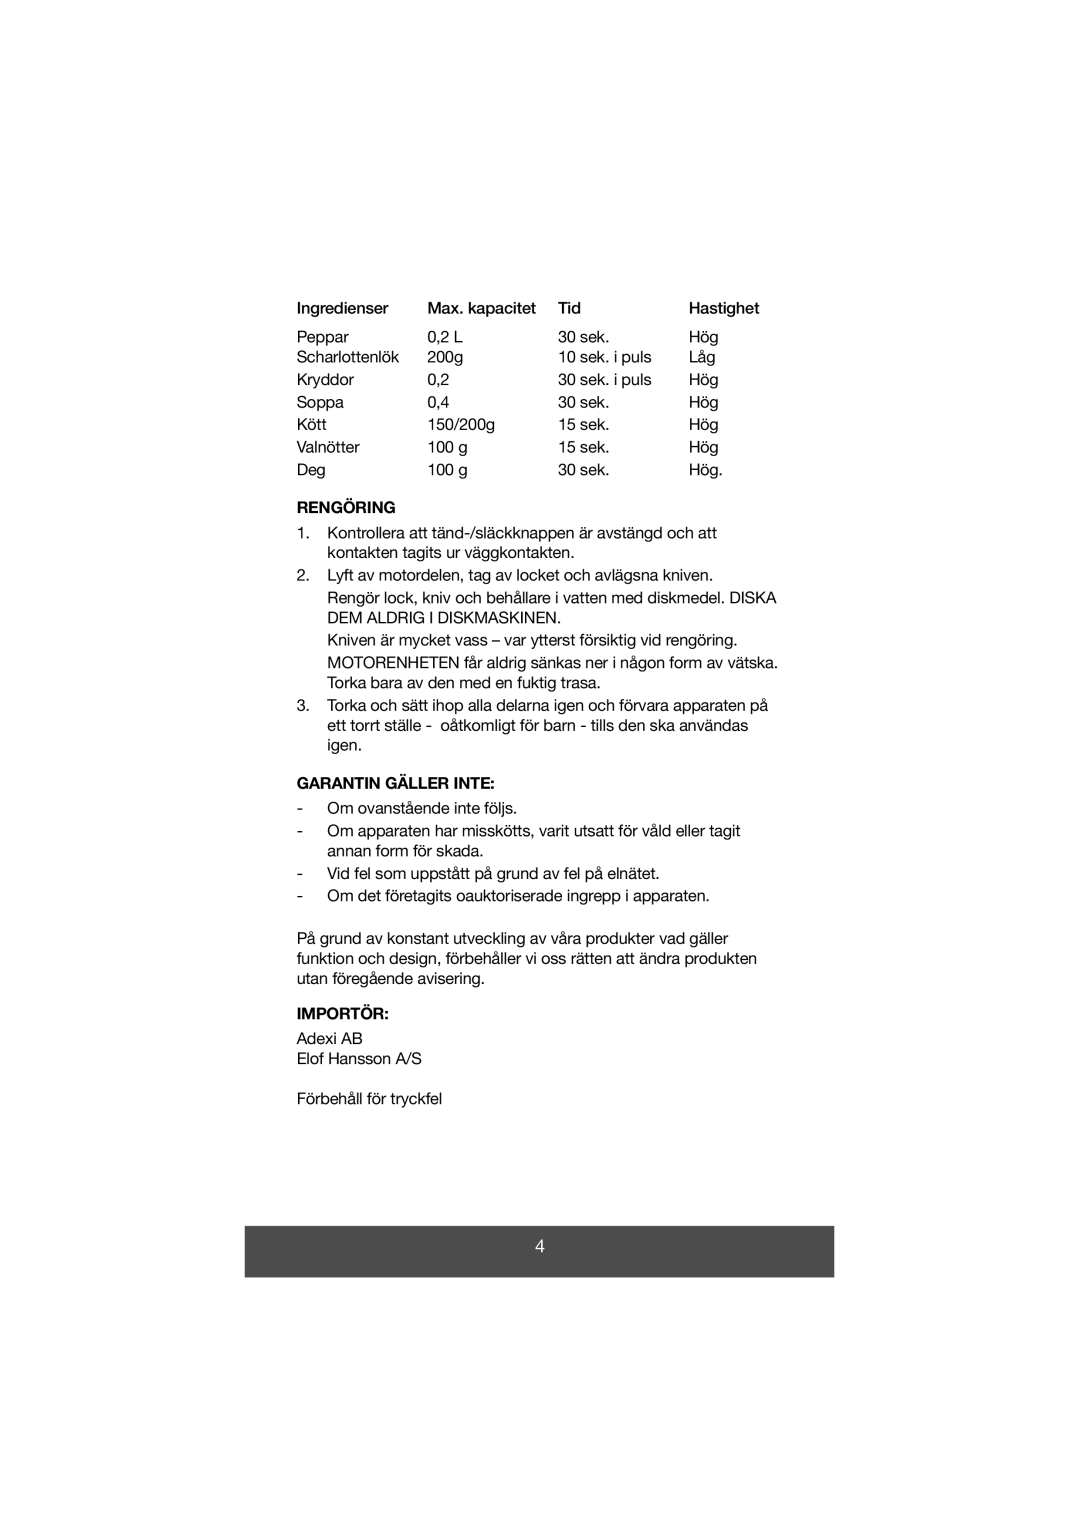 Melissa 646-028 manual Rengöring, Garantin Gäller Inte, Importör 